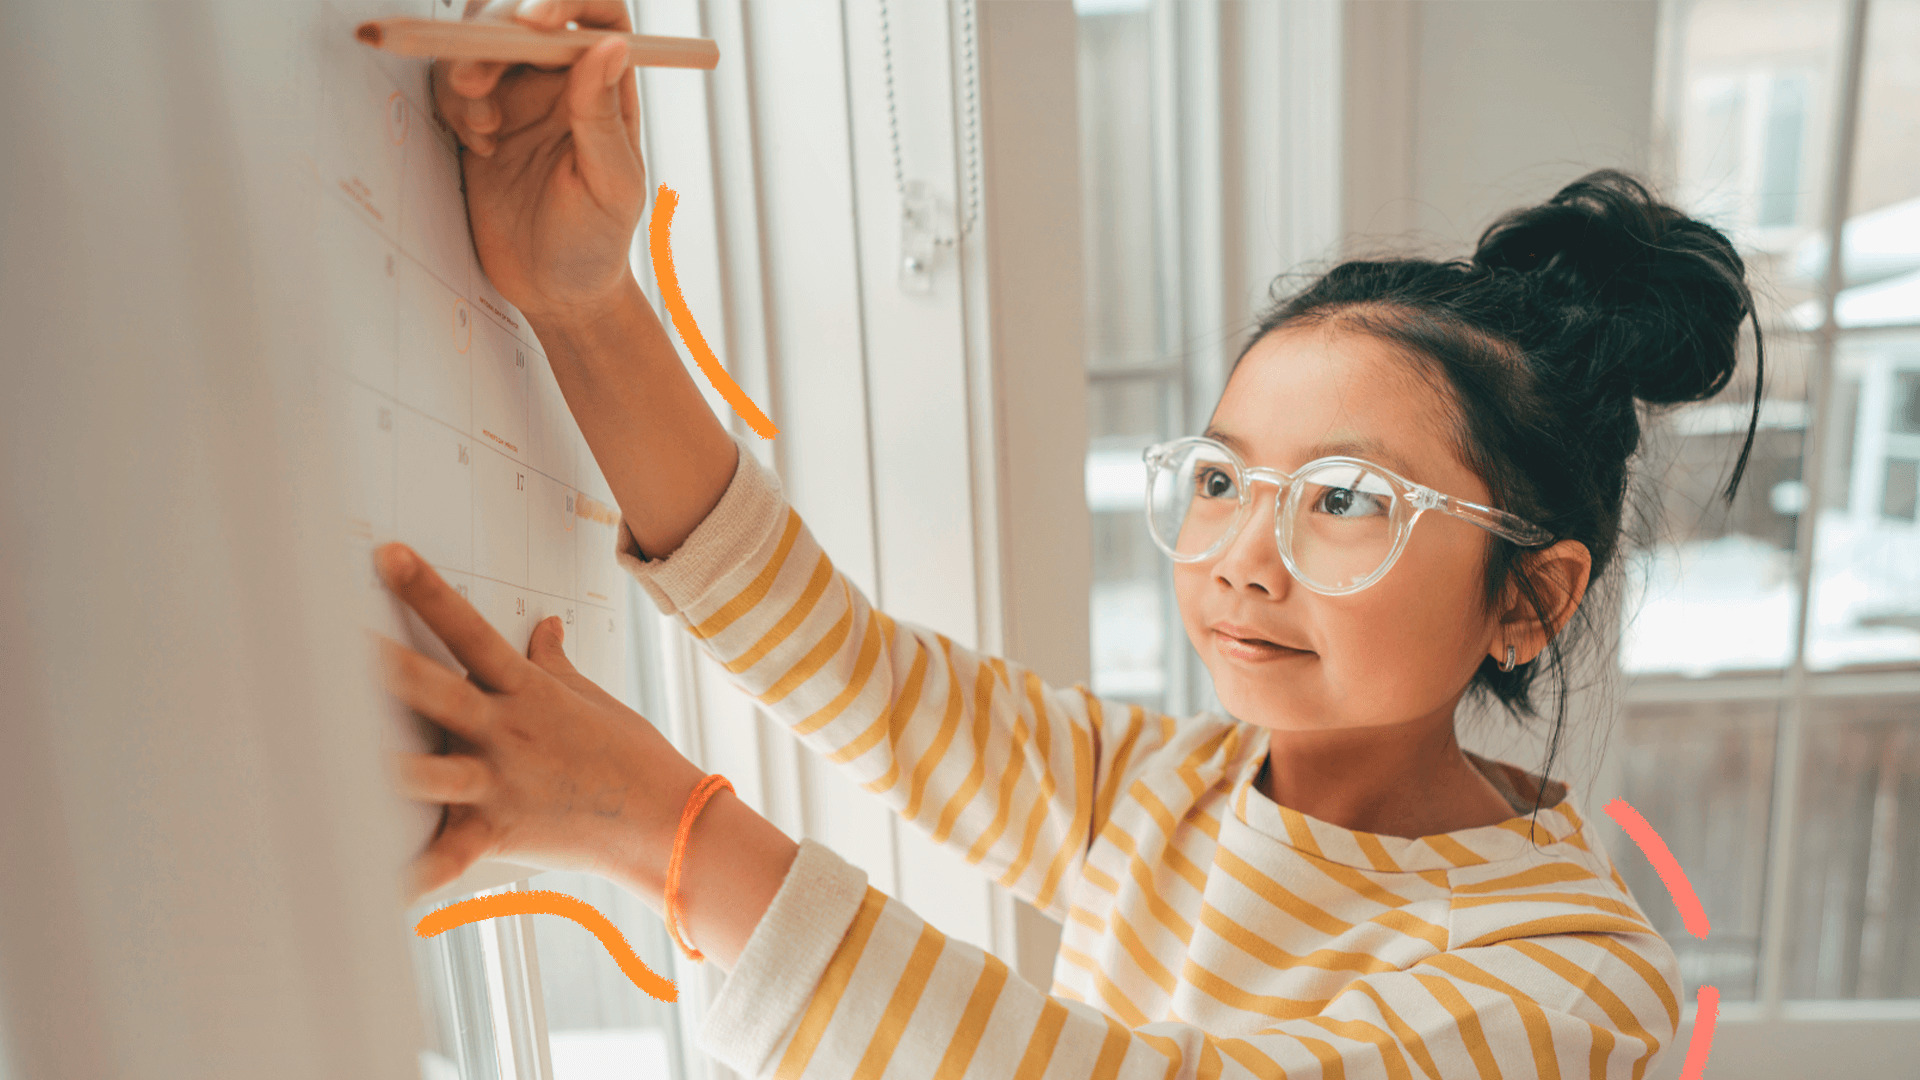 Imagem de capa de matéria sobre o ano bissexto mostra uma menina com traços asiáticos, usando óculos e cabelos presos. Ela escreve com um acaneta em um calendário fixado na parede.